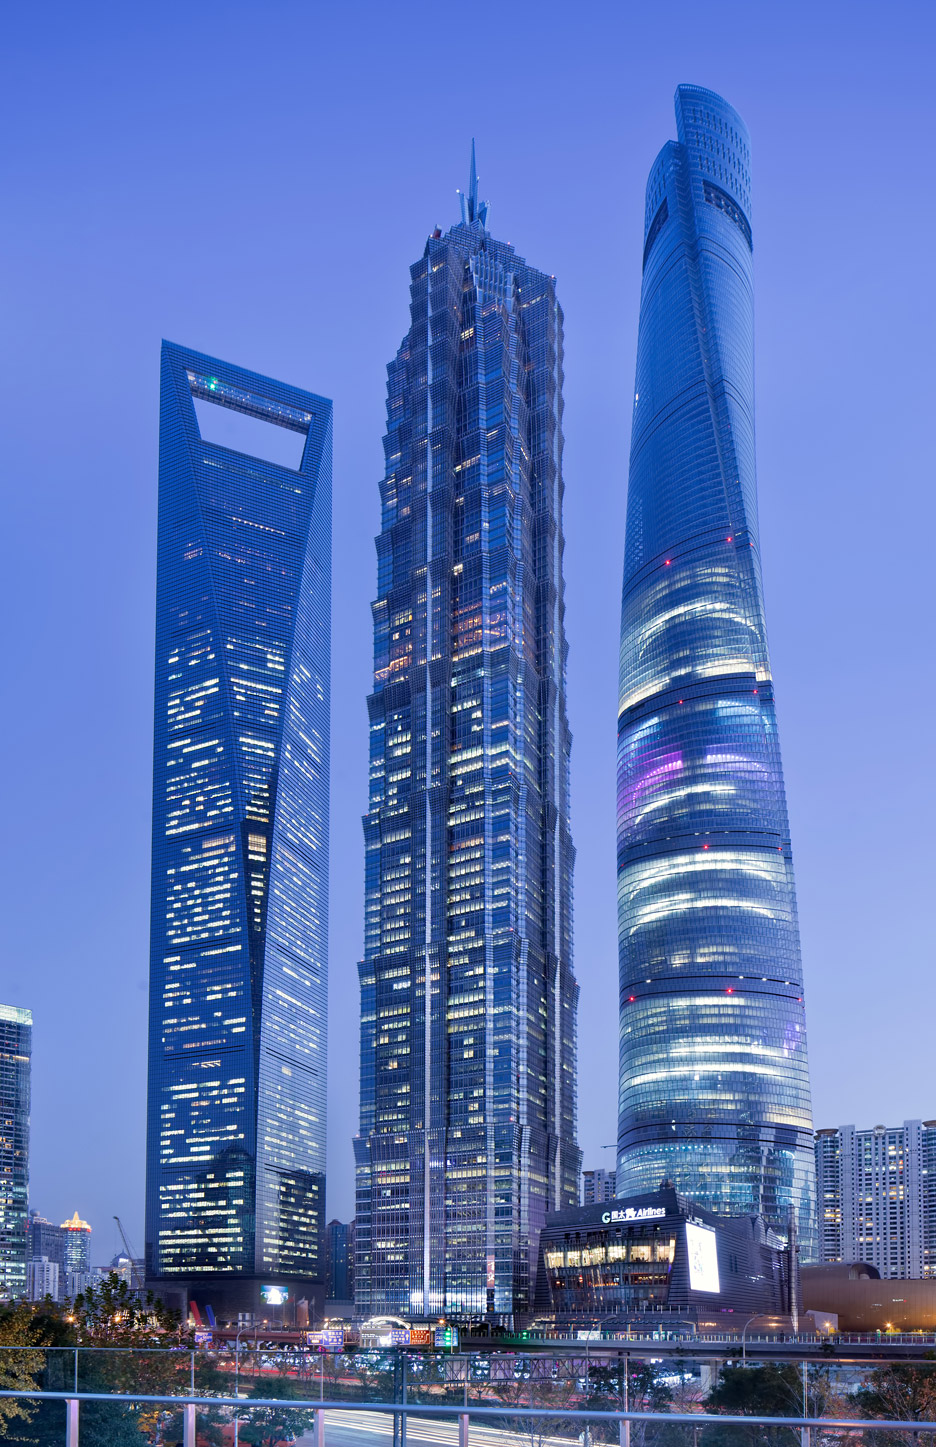 चीनः एक वर्षमा ८८ वटा गगनचुम्बी भवन बनाउने संसारकै पहिलो देश